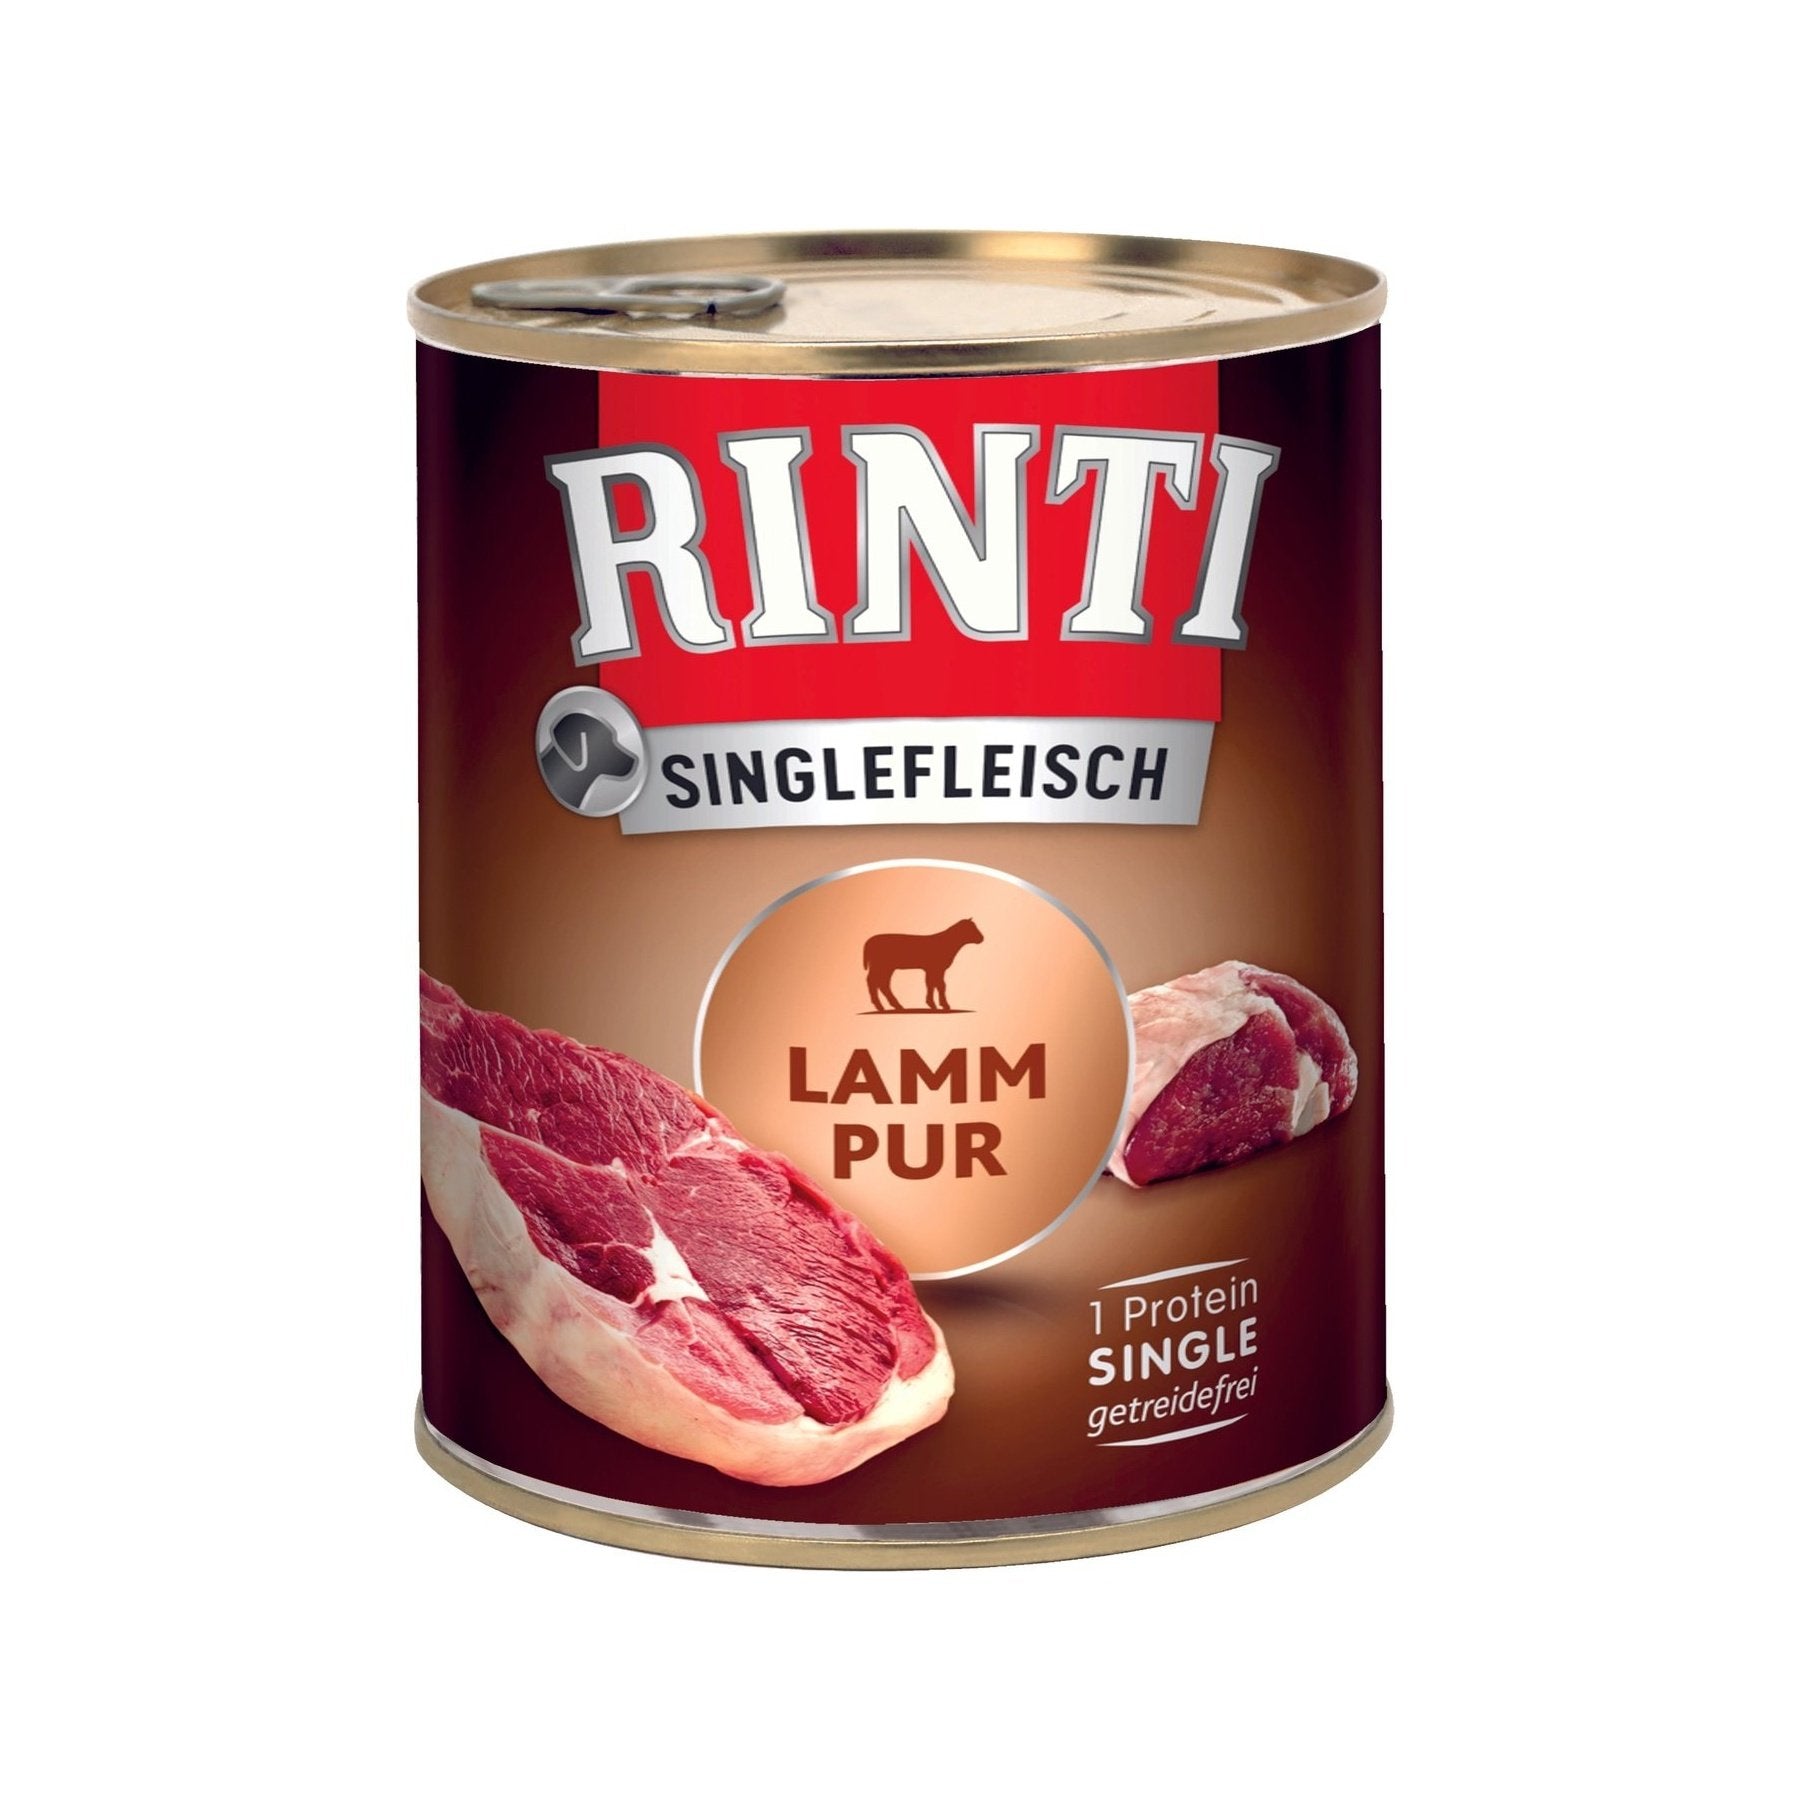 Artikel mit dem Namen Rinti Singlefleisch Lamm Pur im Shop von zoo.de , dem Onlineshop für nachhaltiges Hundefutter und Katzenfutter.